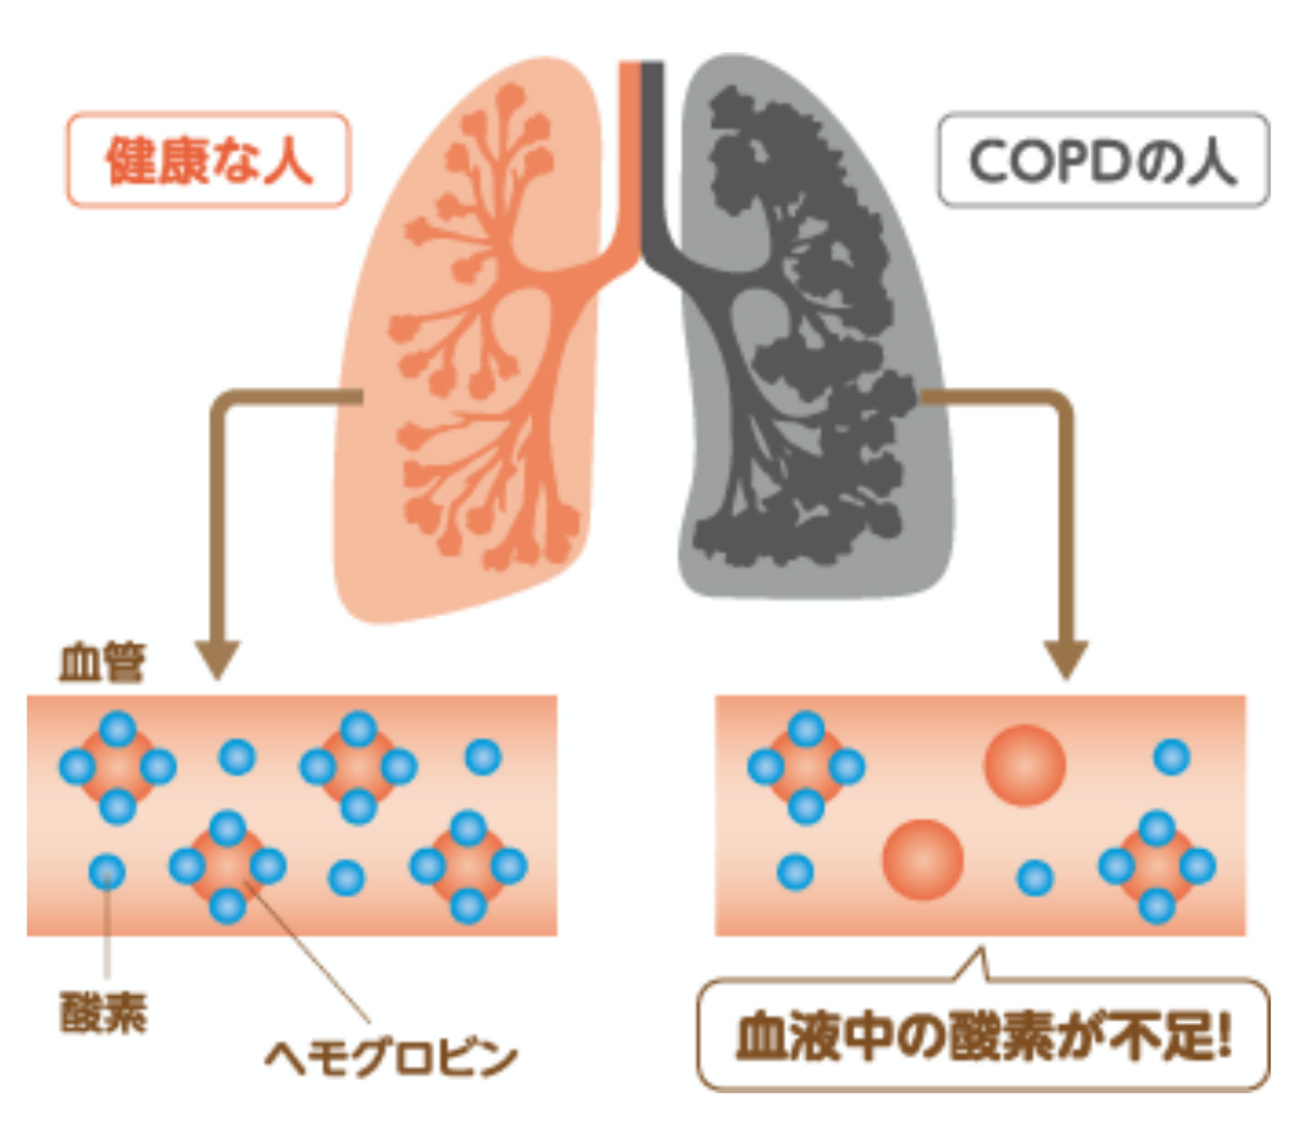 COPDでは低酸素血症を起こす